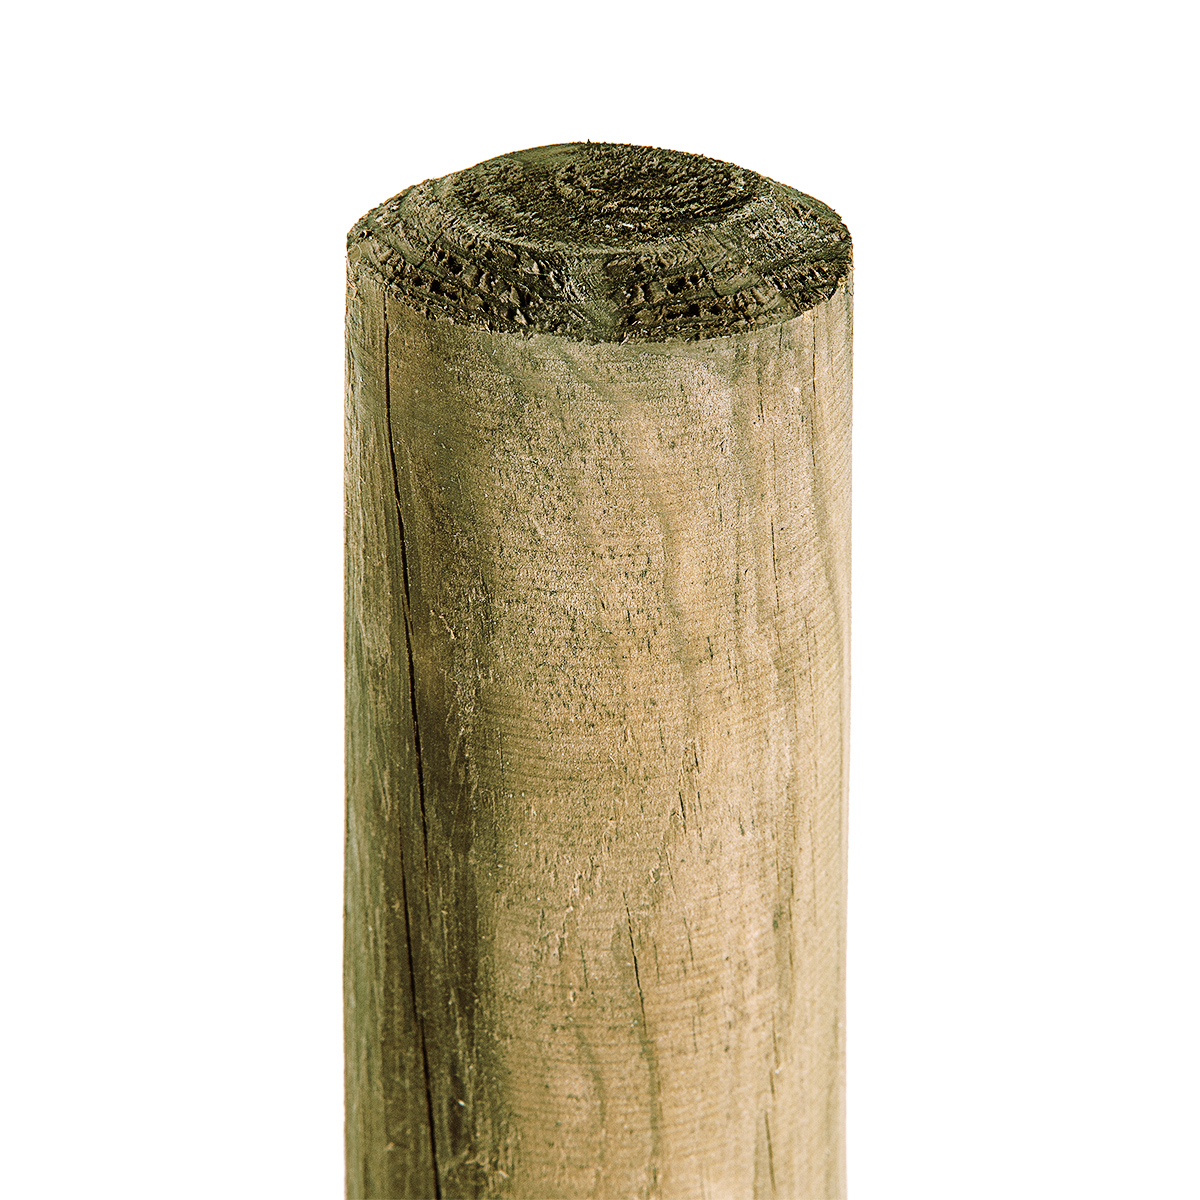 Holzpfahl 6cm Stärke x 150cm Höhe KDI-grün Pfahl Baumpfahl für Gartenzaun